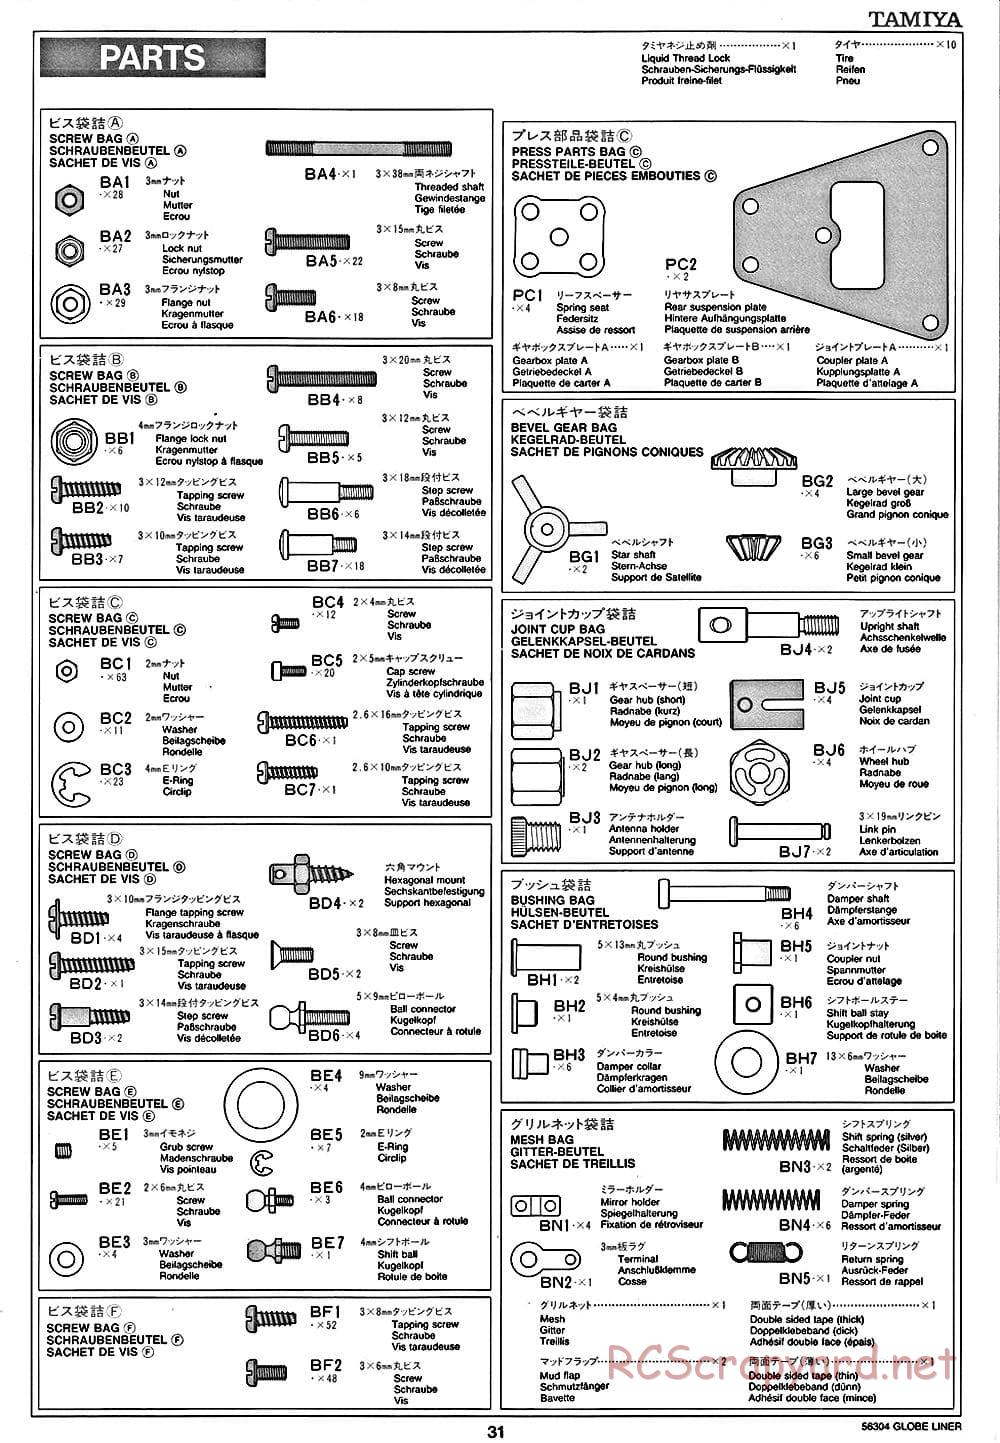 Tamiya - Globe Liner - Manual - Page 31